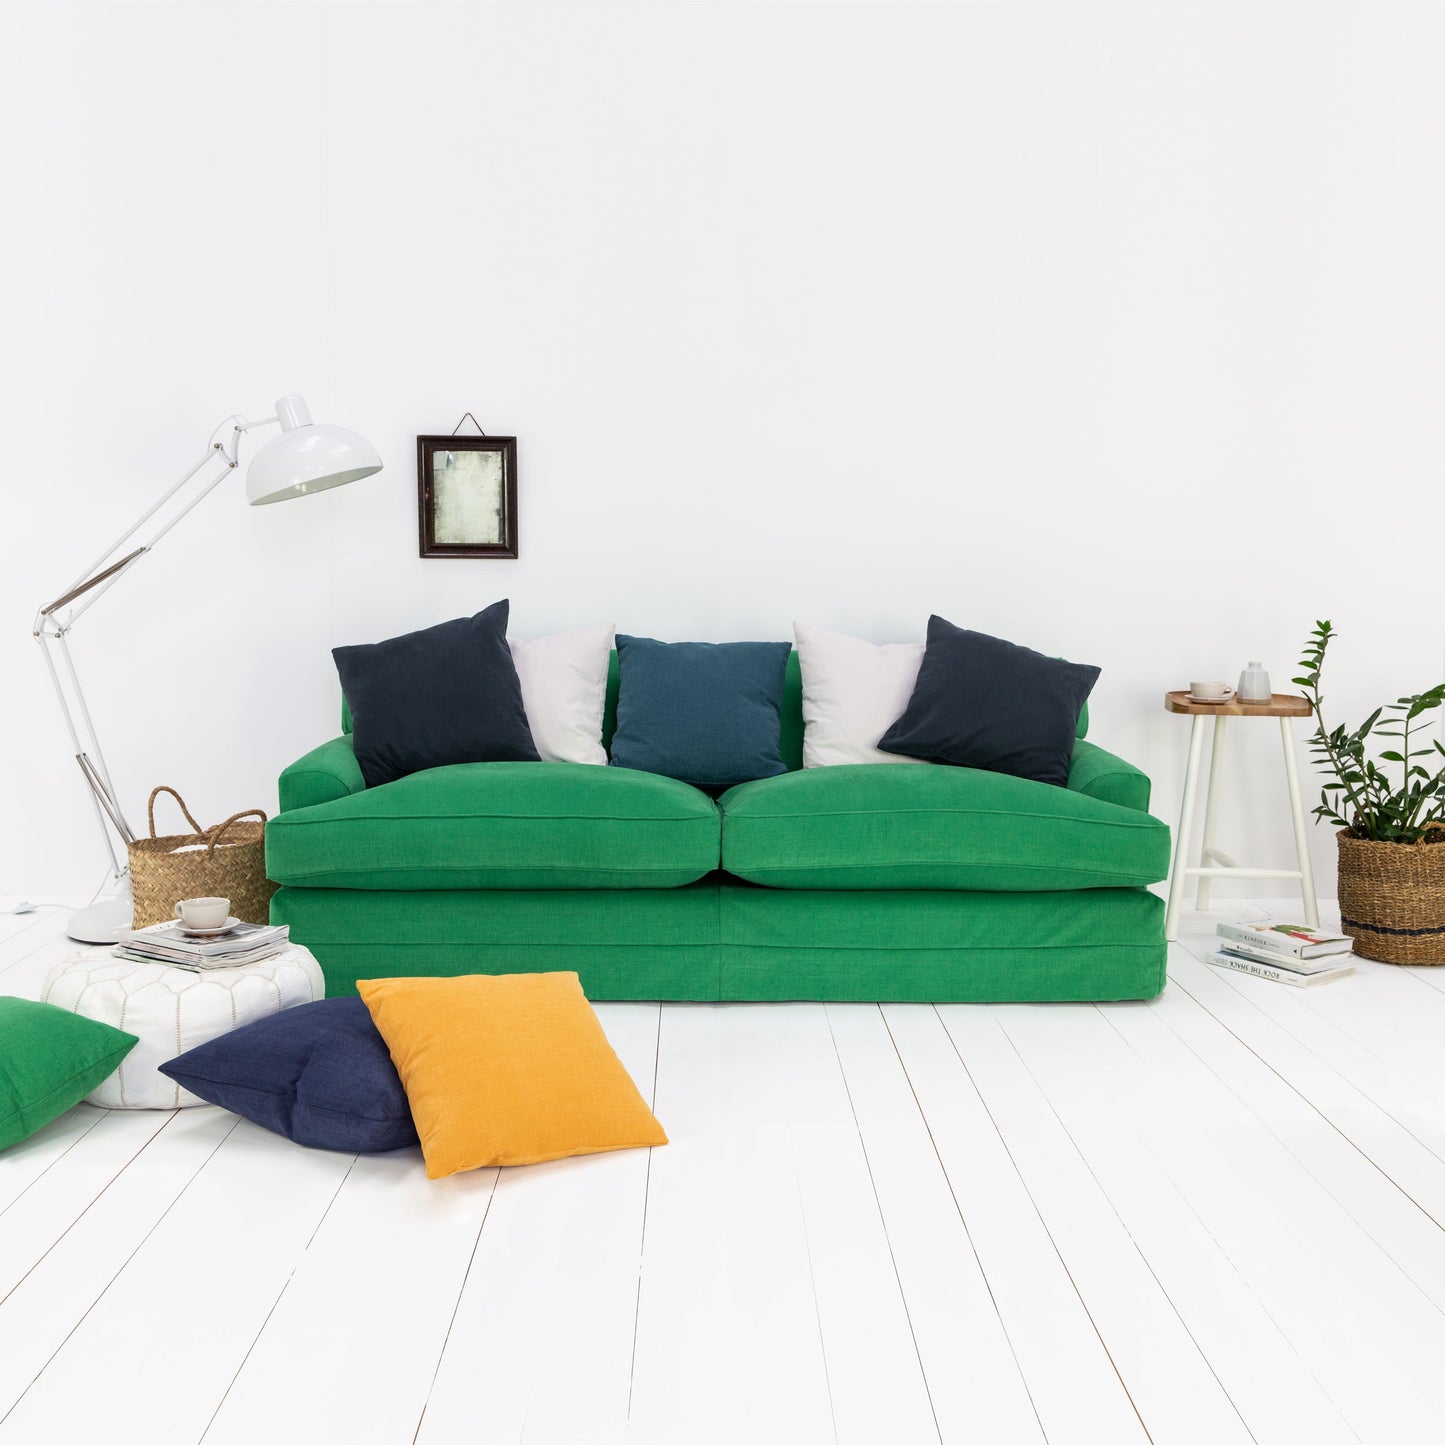 How To Choose The Perfect Farmhouse Sofa